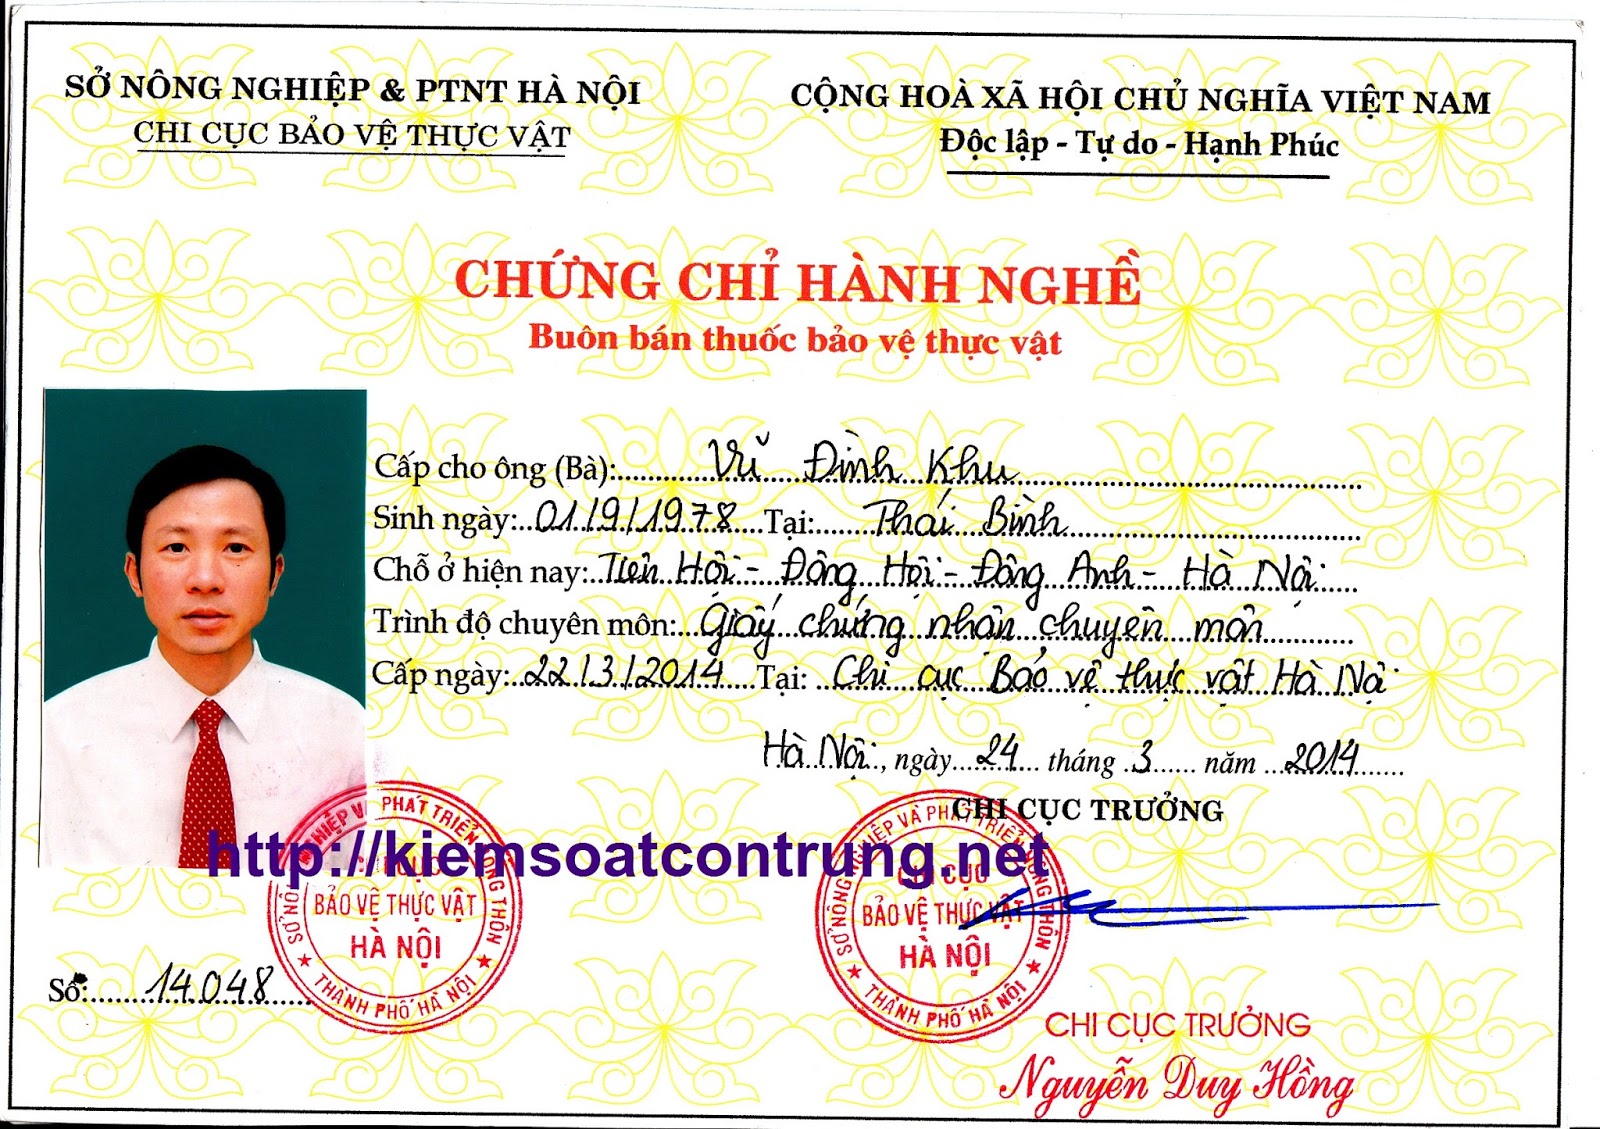 Dịch vụ xin cấp giấy chứng nhận bán buôn, bán lẻ thuốc bảo vệ thực vật tại các tỉnh Đồng Nai, Bình Dương, Bình Phước, thành phố Hồ Chí Minh.